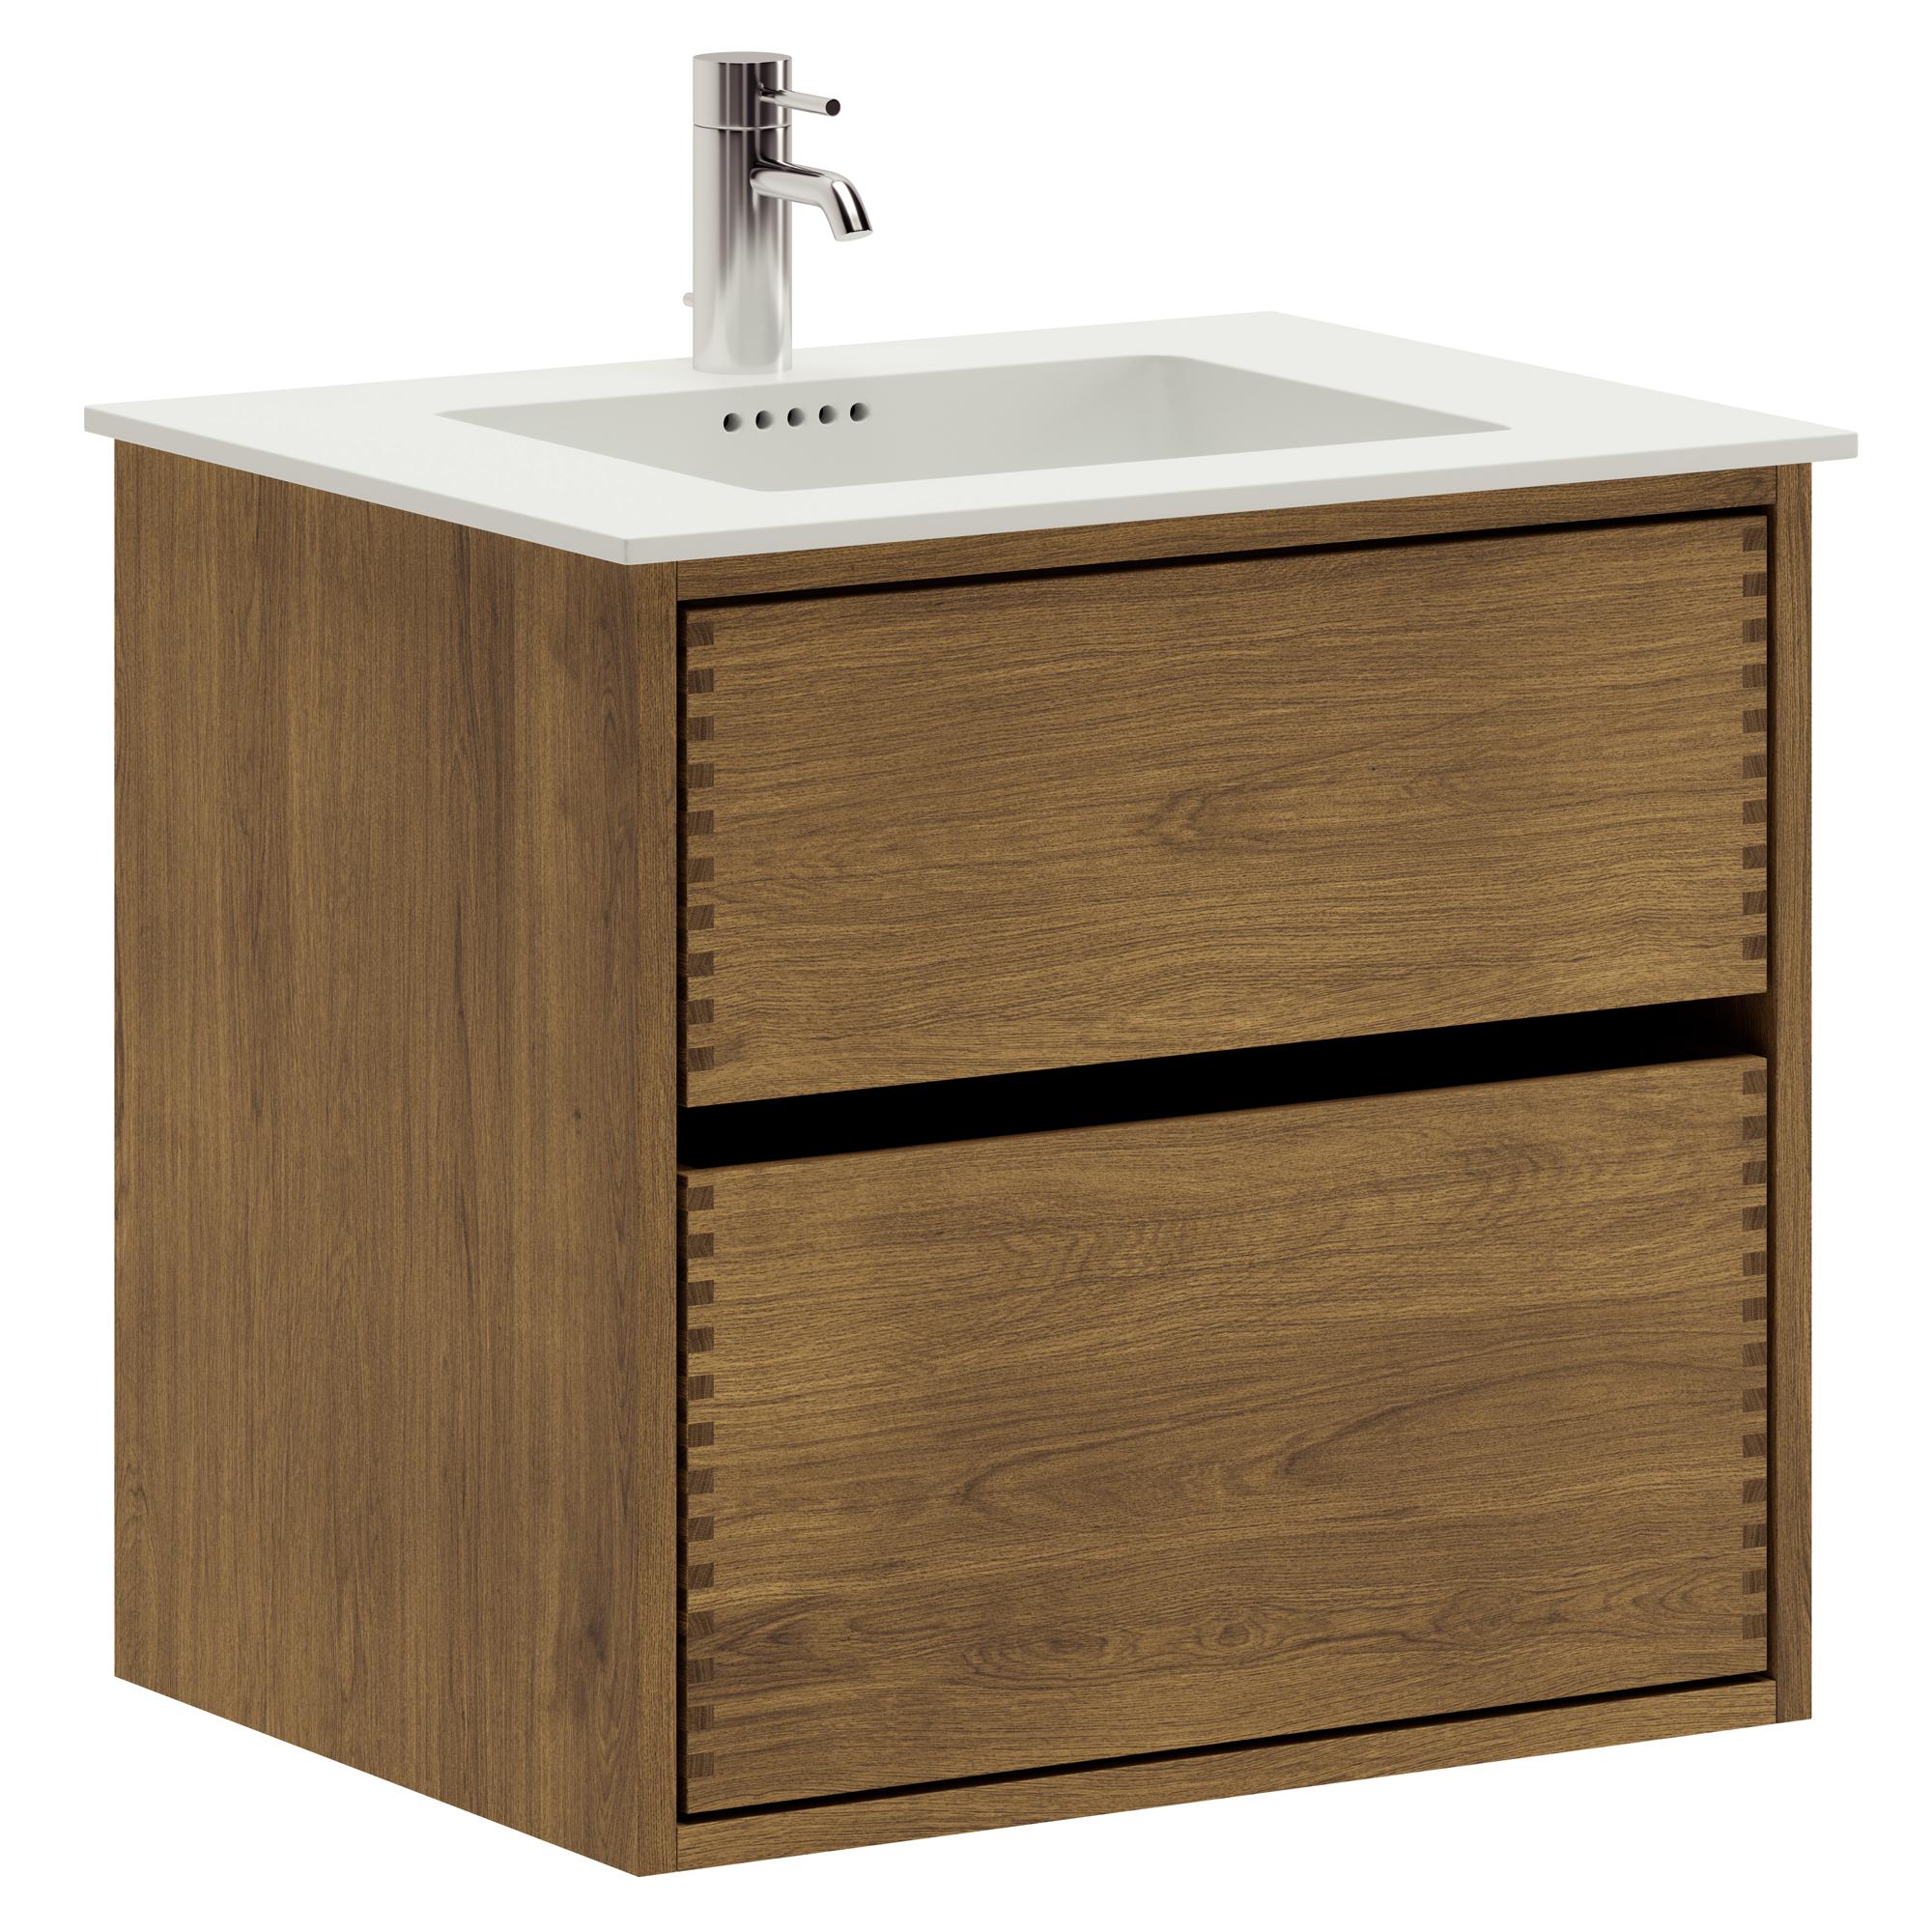 60 cm dunkel-geölter Just Wood Original-Badezimmermöbel mit 2 Schubladen und Solid Surface-Waschbecken